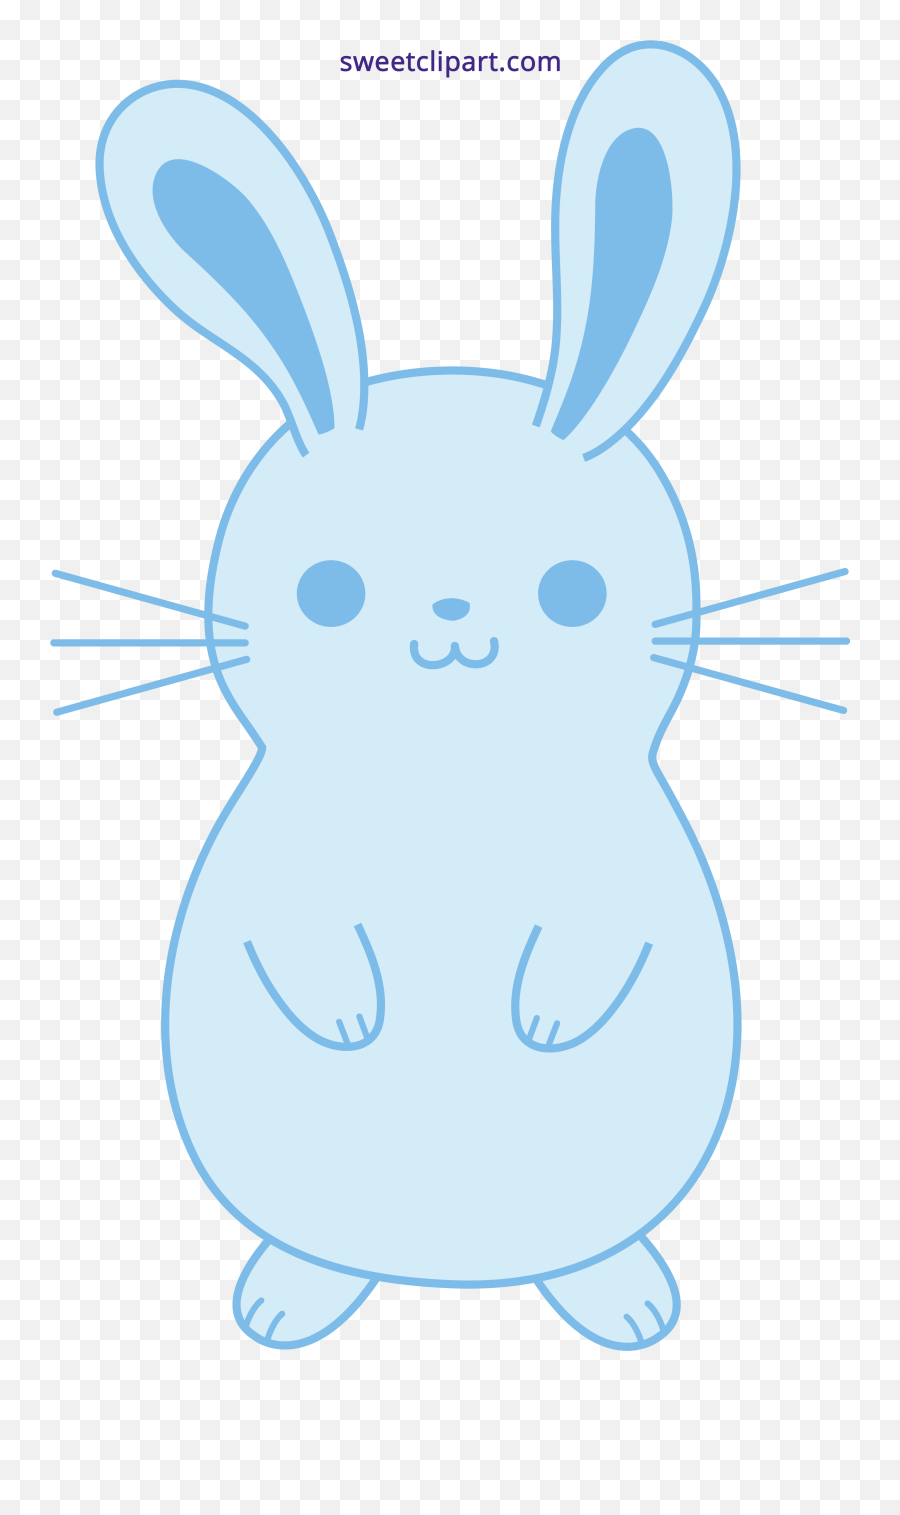 Clipart Bunny Rabbit Clipart Bunny Rabbit Transparent Free - Cute Clipart Images Of Rabbits Emoji,Bunny Clipart